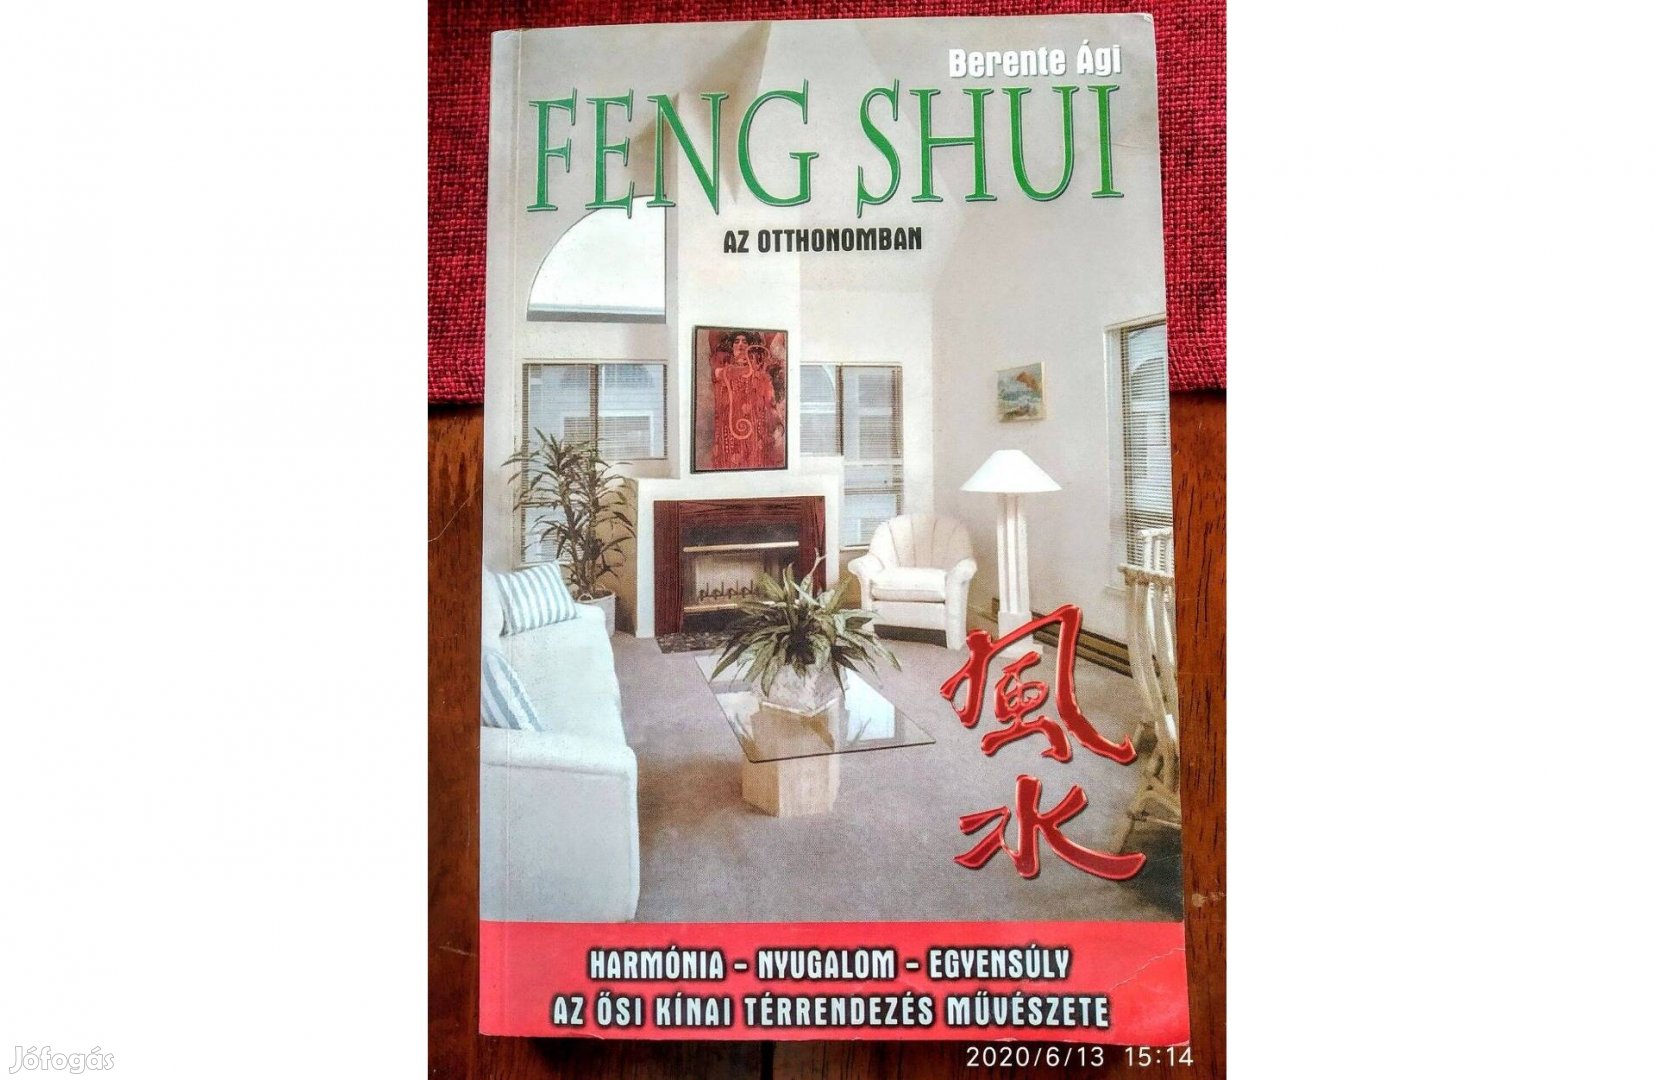 Feng shui az otthonunkban Berente Ági